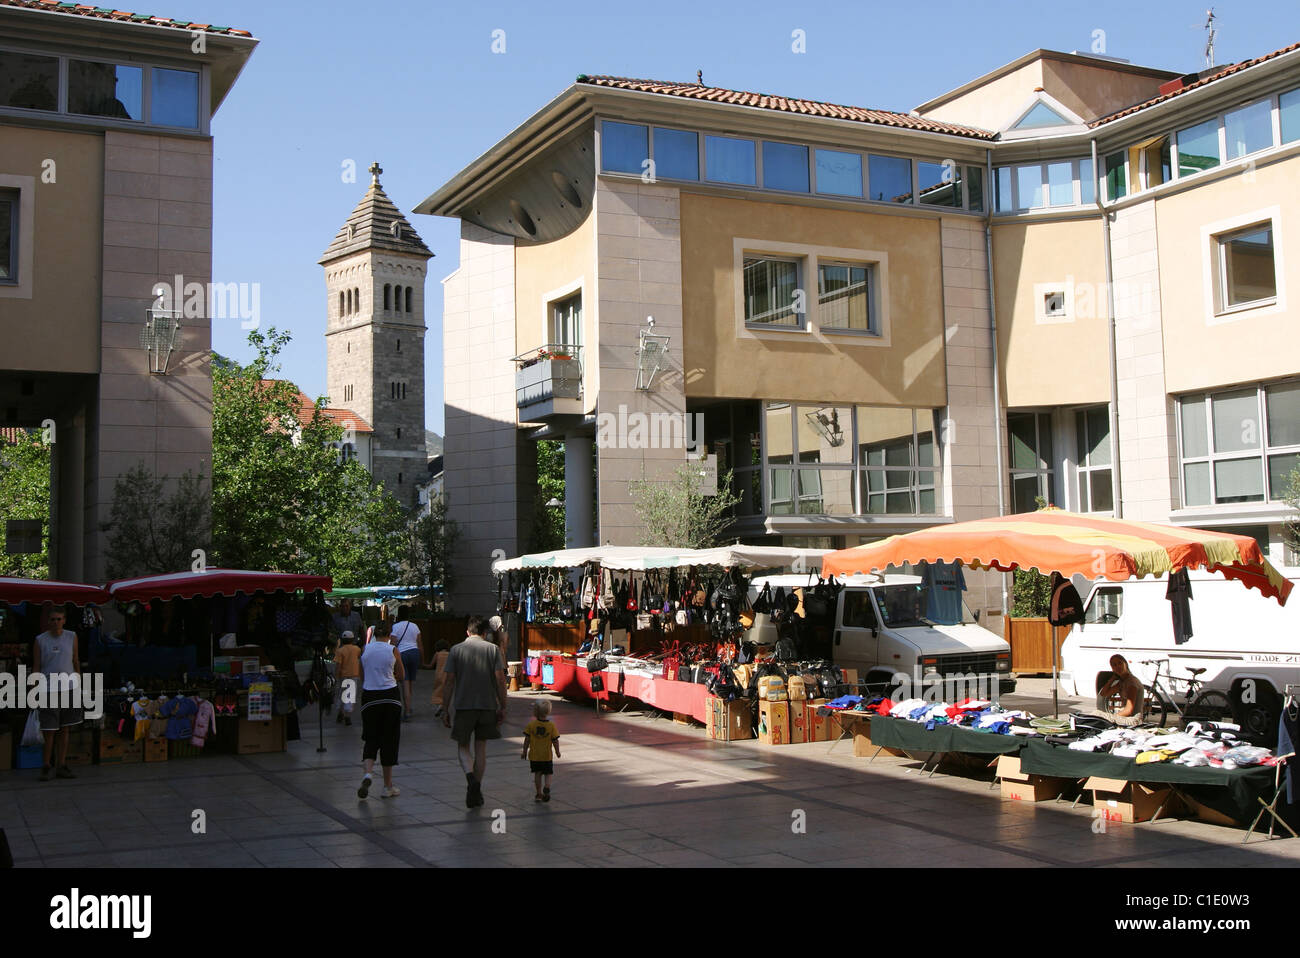 France, Aveyron, Millau, Consuls sqaure, market day Stock Photo